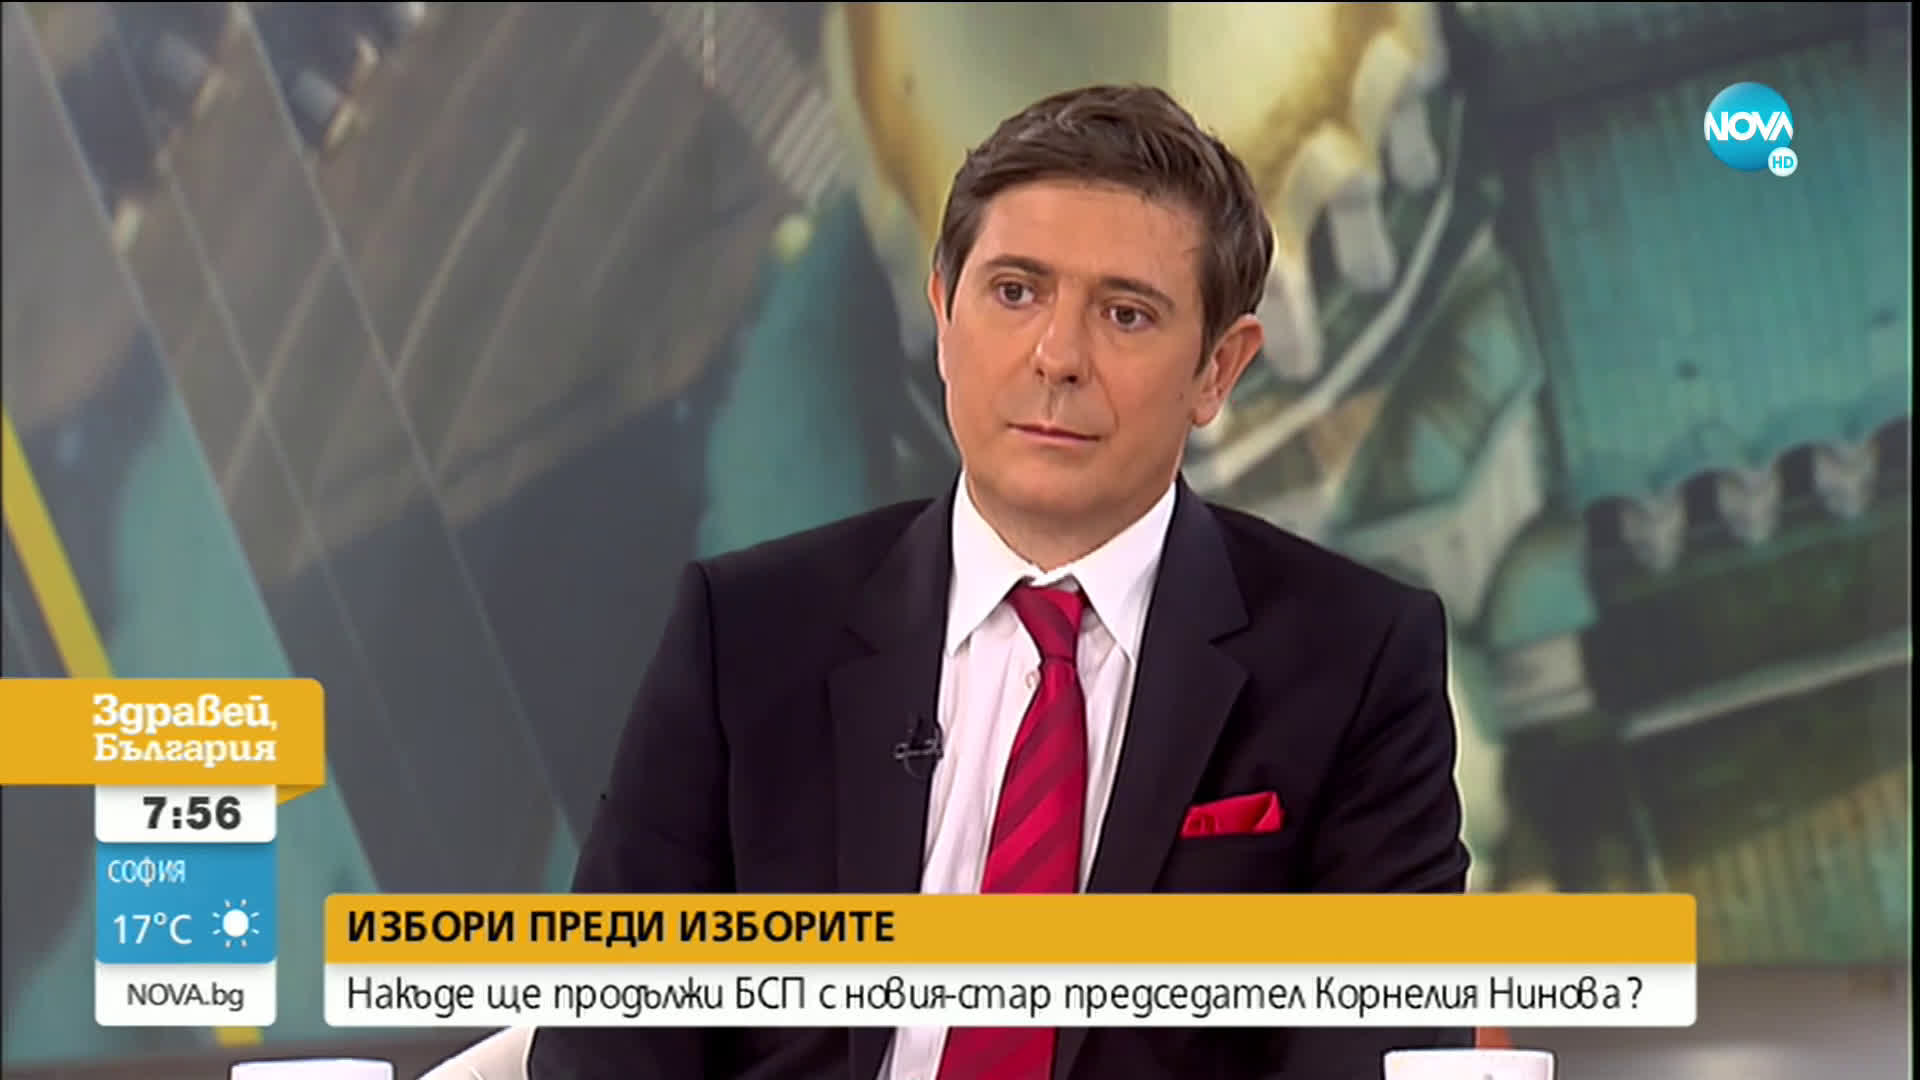 Димитър Данчев: Обидно е някой да твърди, че изборите за лидер на БСП са били манипулирани